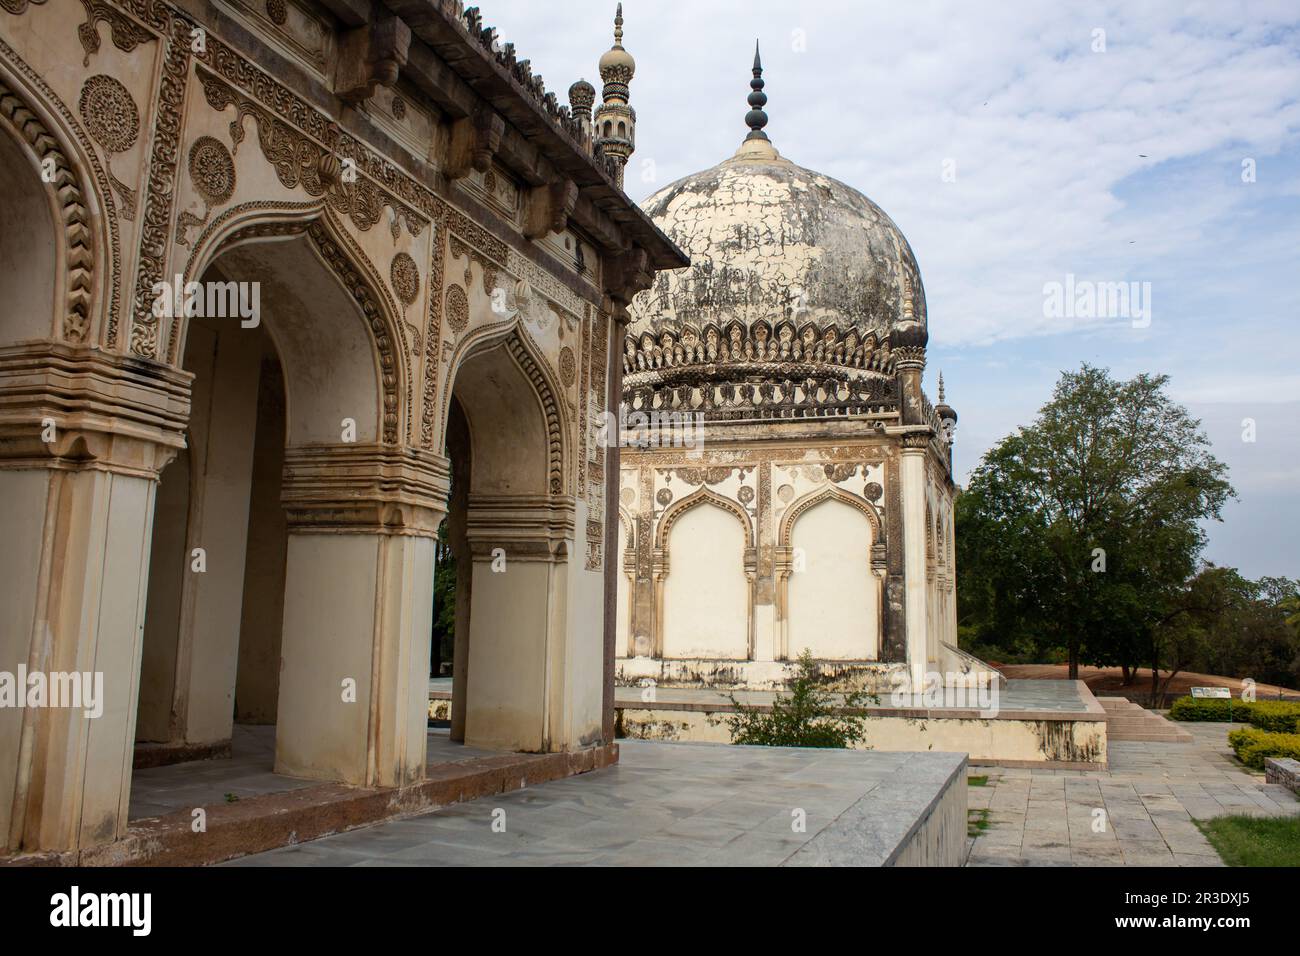 Bâtiment tombeau historique avec jardin paysagé dans le parc archéologique de Qutb Shahi, Hyderabad, Inde Banque D'Images